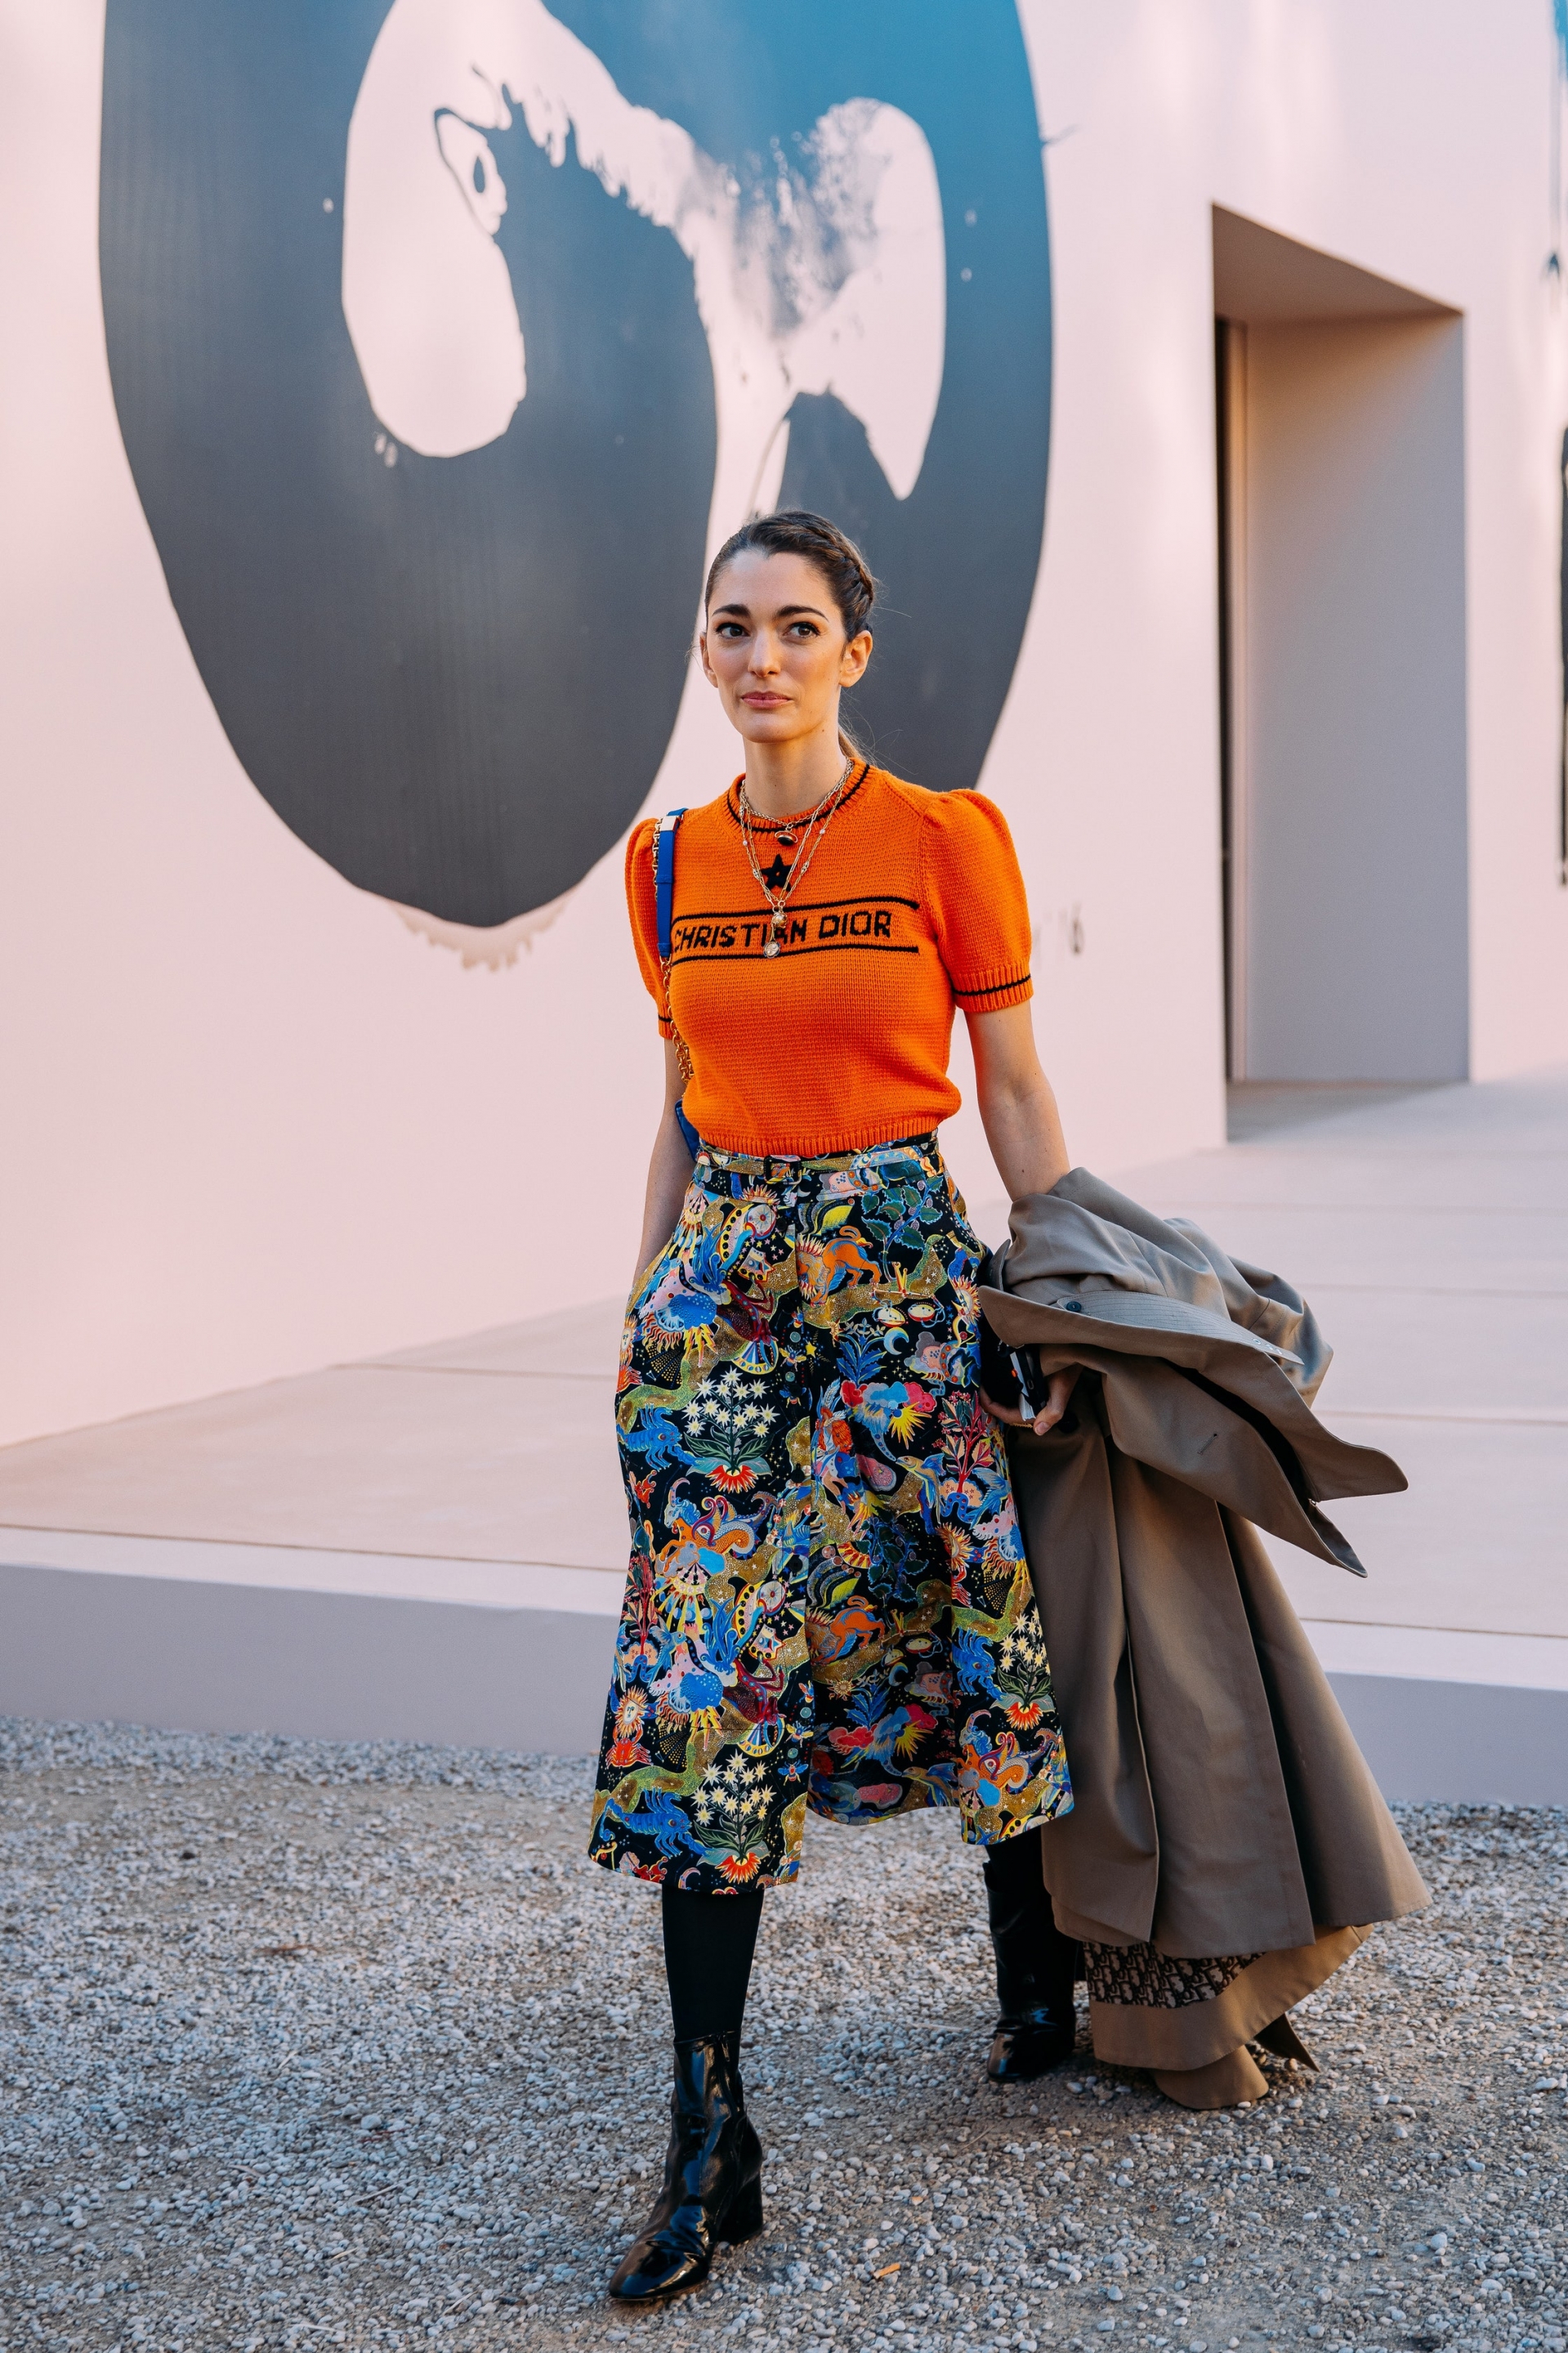 Một quý cô Dior thanh lịch lọt top street style ấn tượng khi mix áo len màu cam cùng chân váy hoạ tiết.